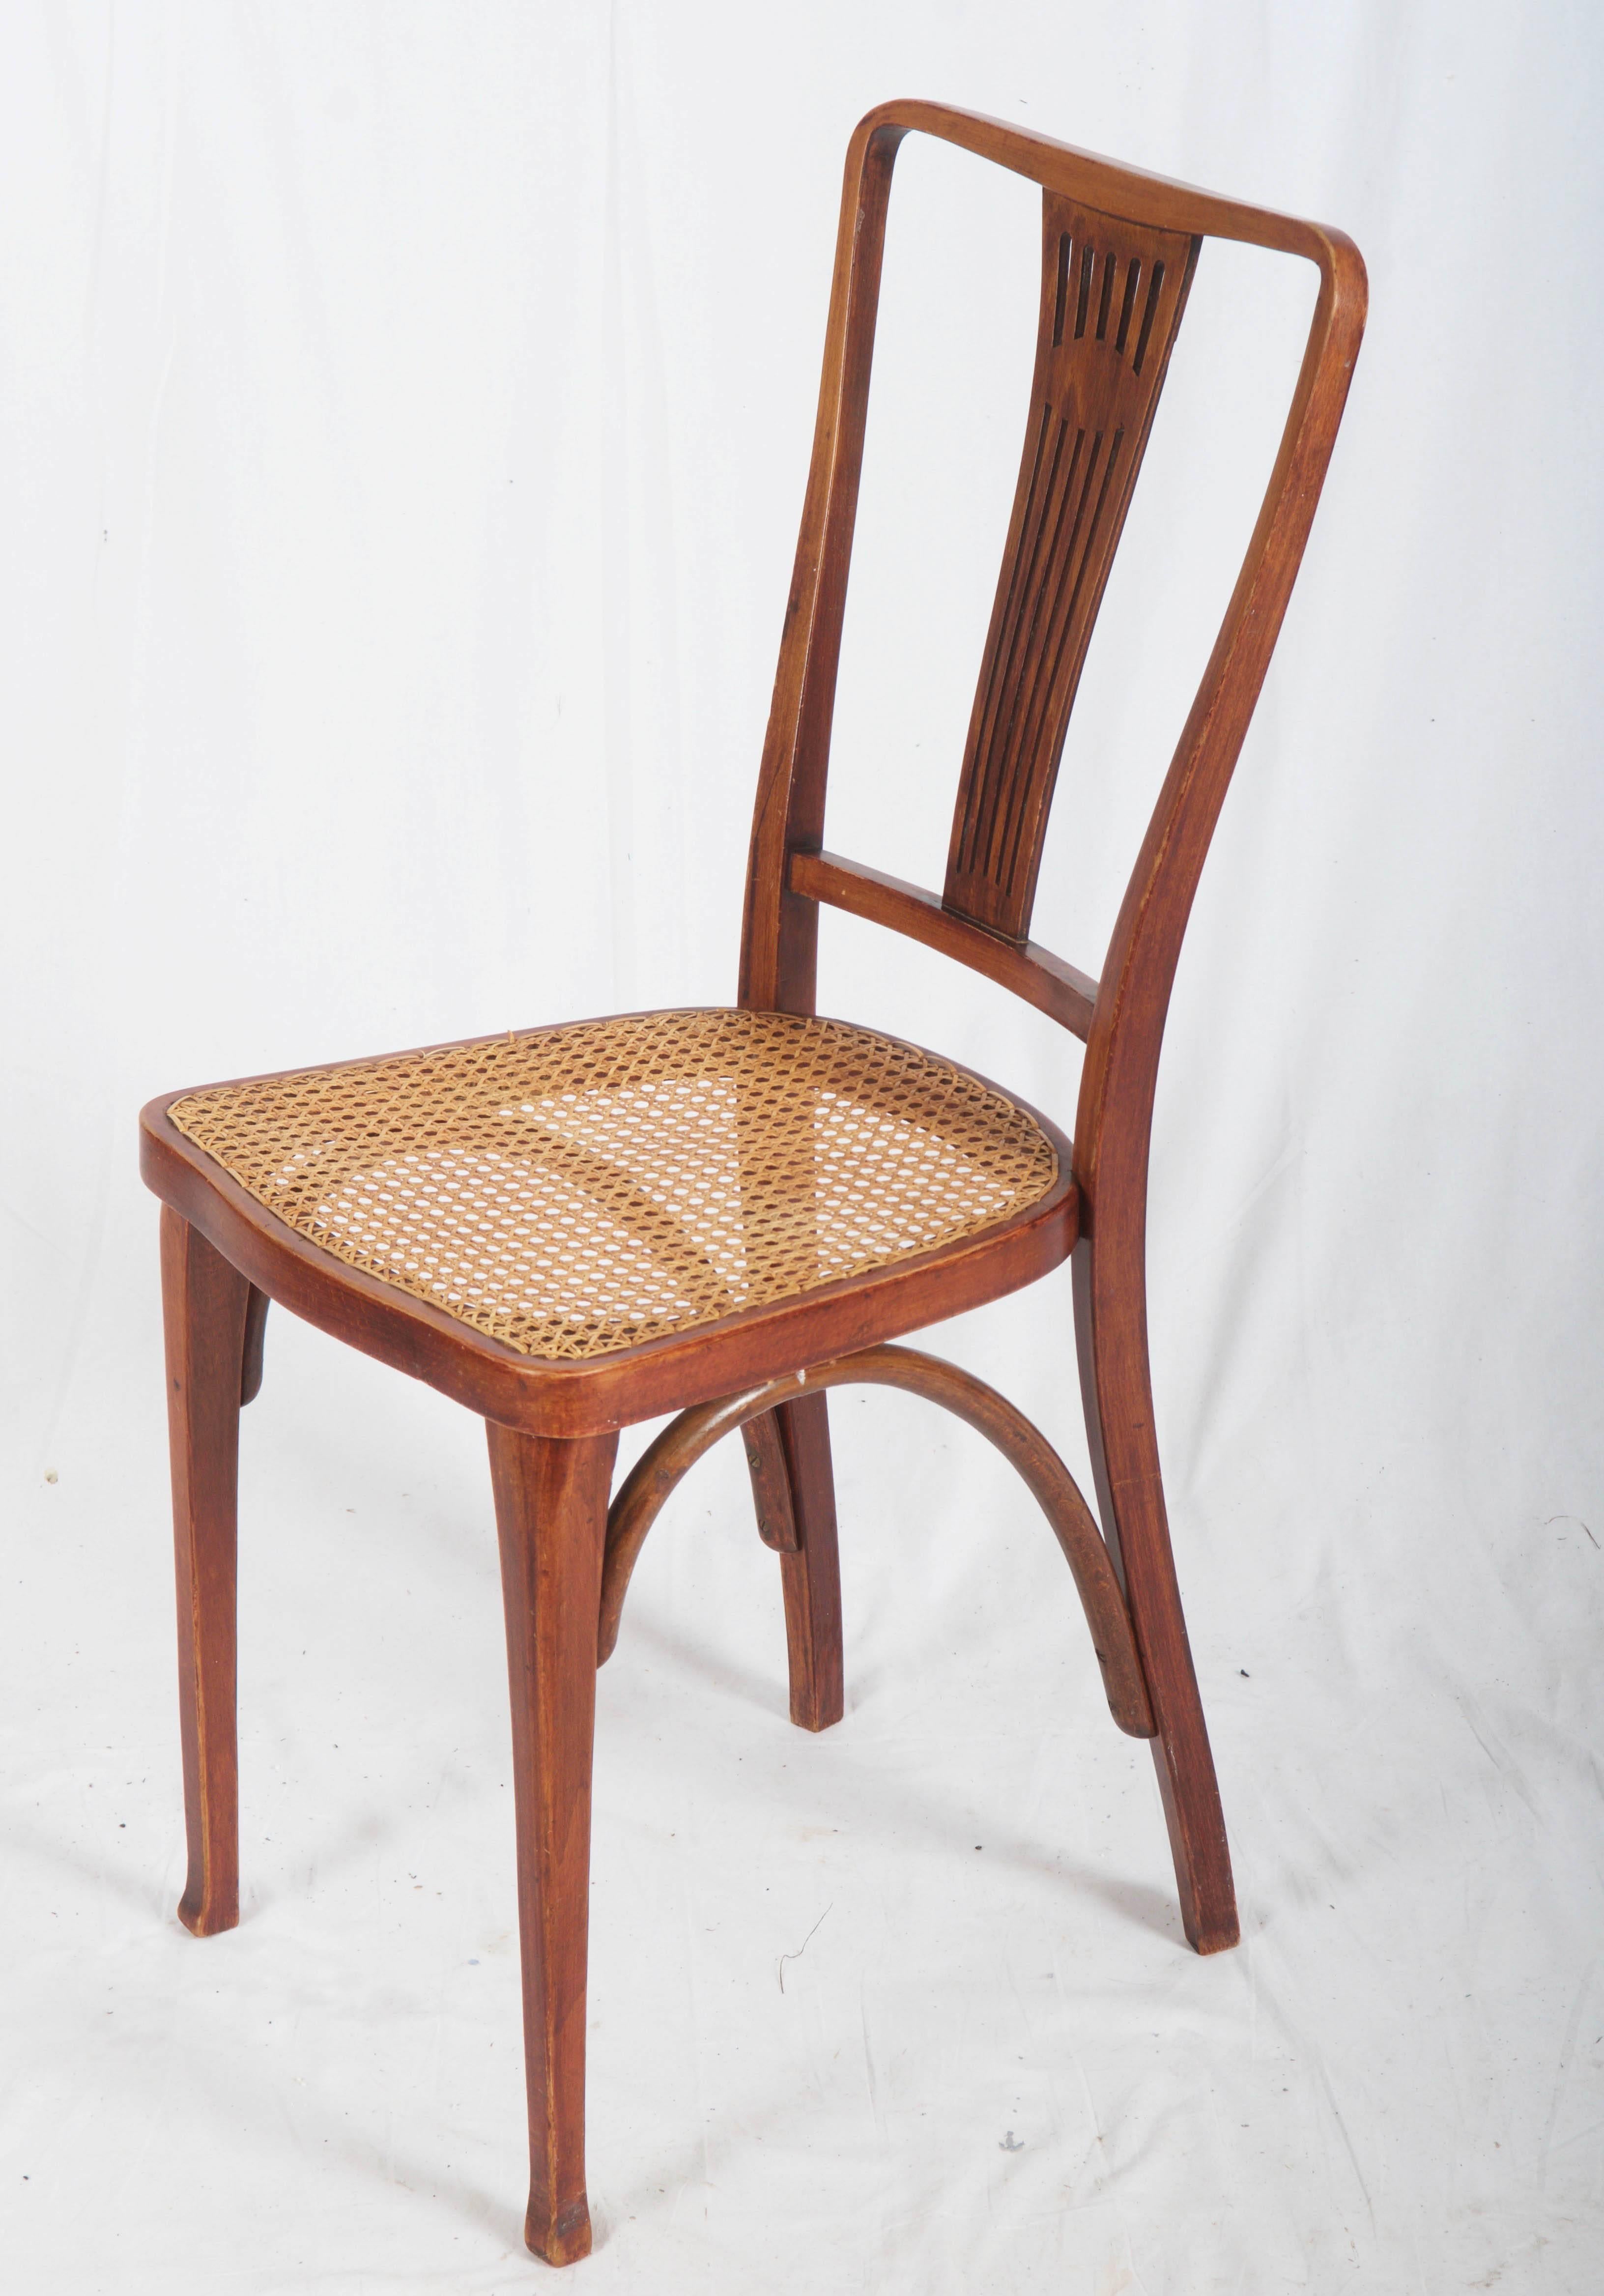 Vienna Secession Art Nouveau Thonet Chairs For Sale